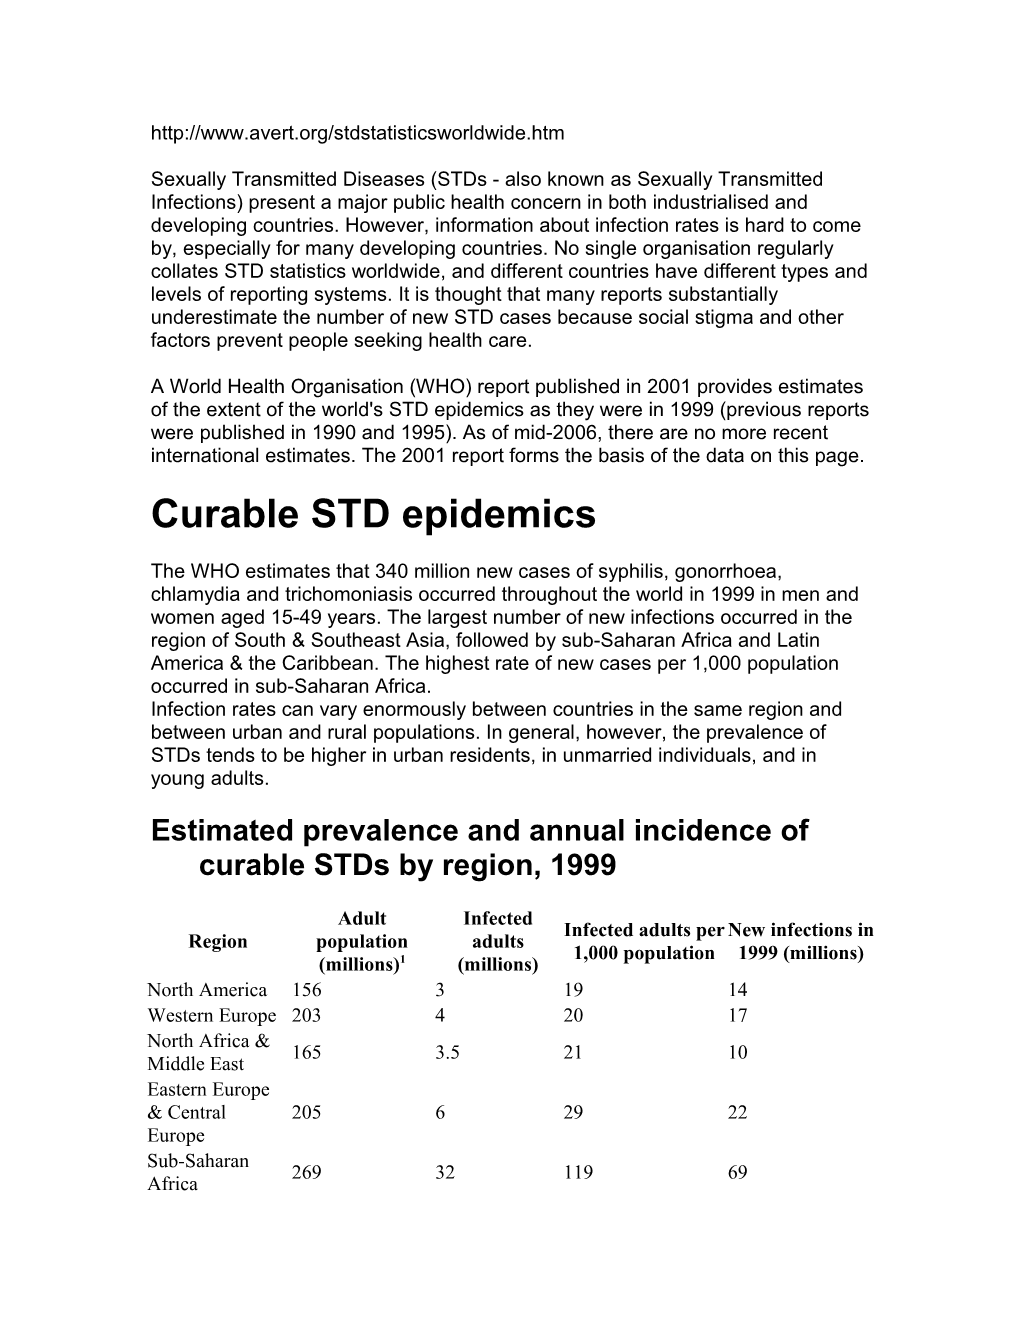 Curable STD Epidemics